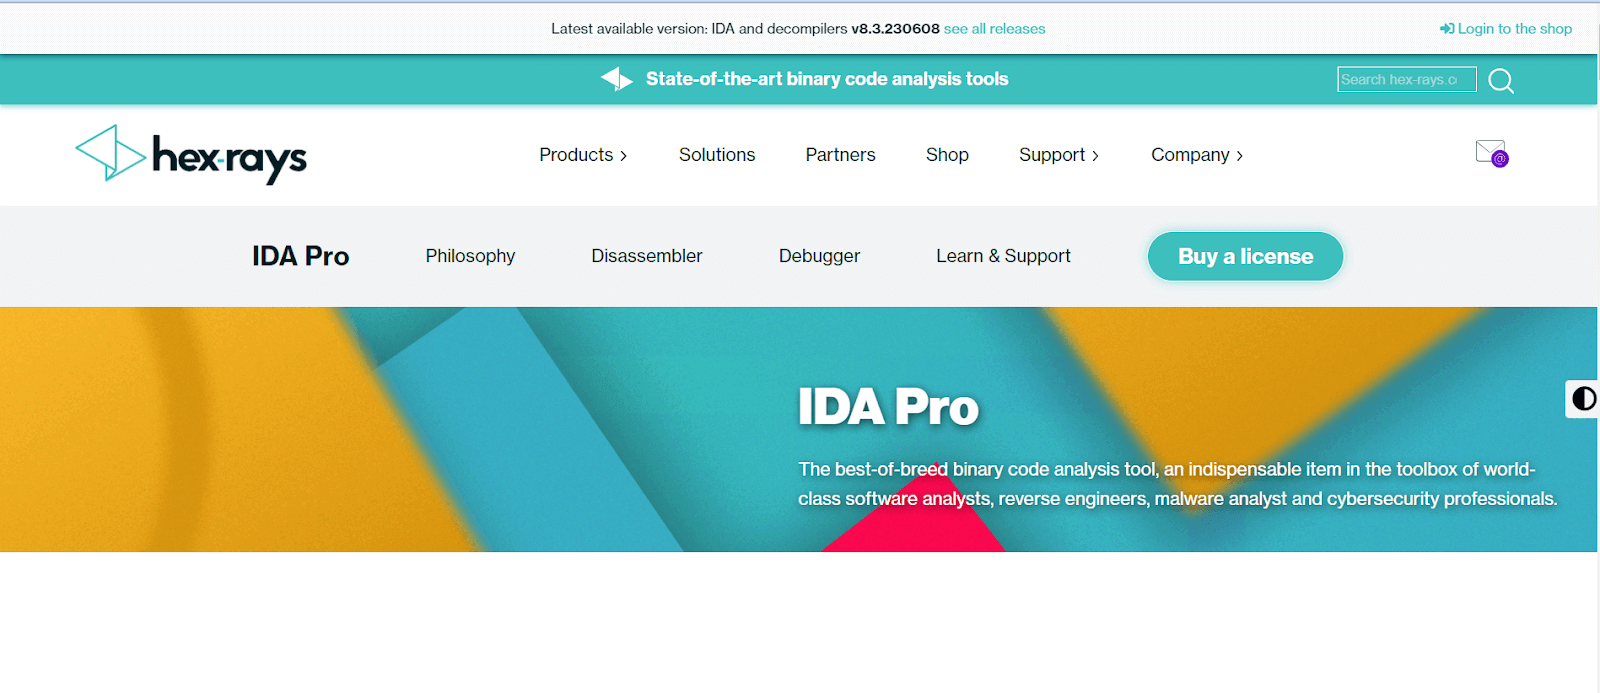 IDA Pro